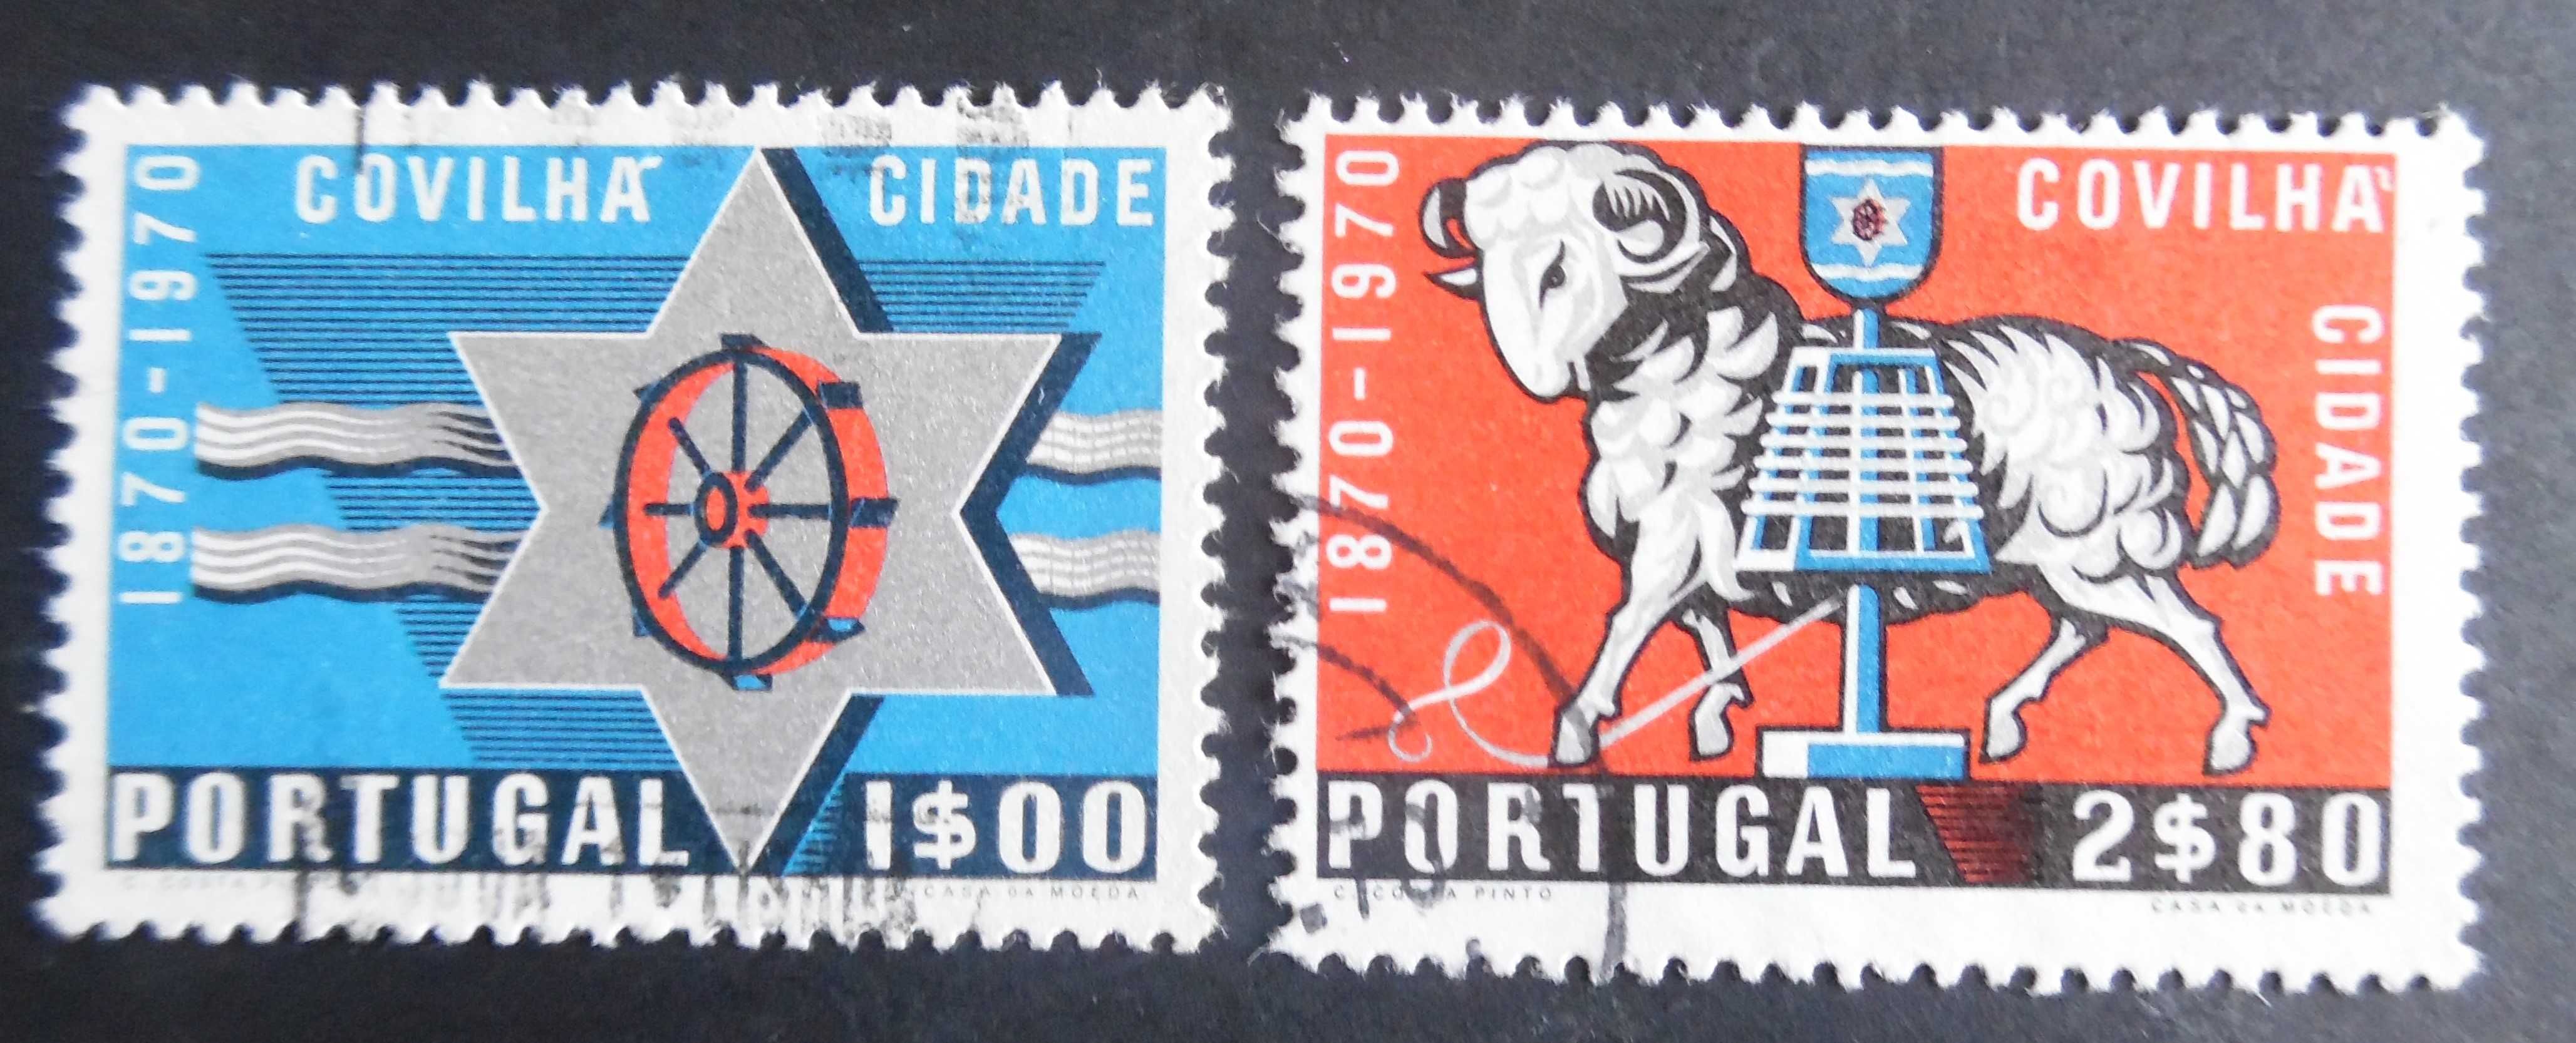 Selos Portugal 1970-Cidade da Covilhã completo usados